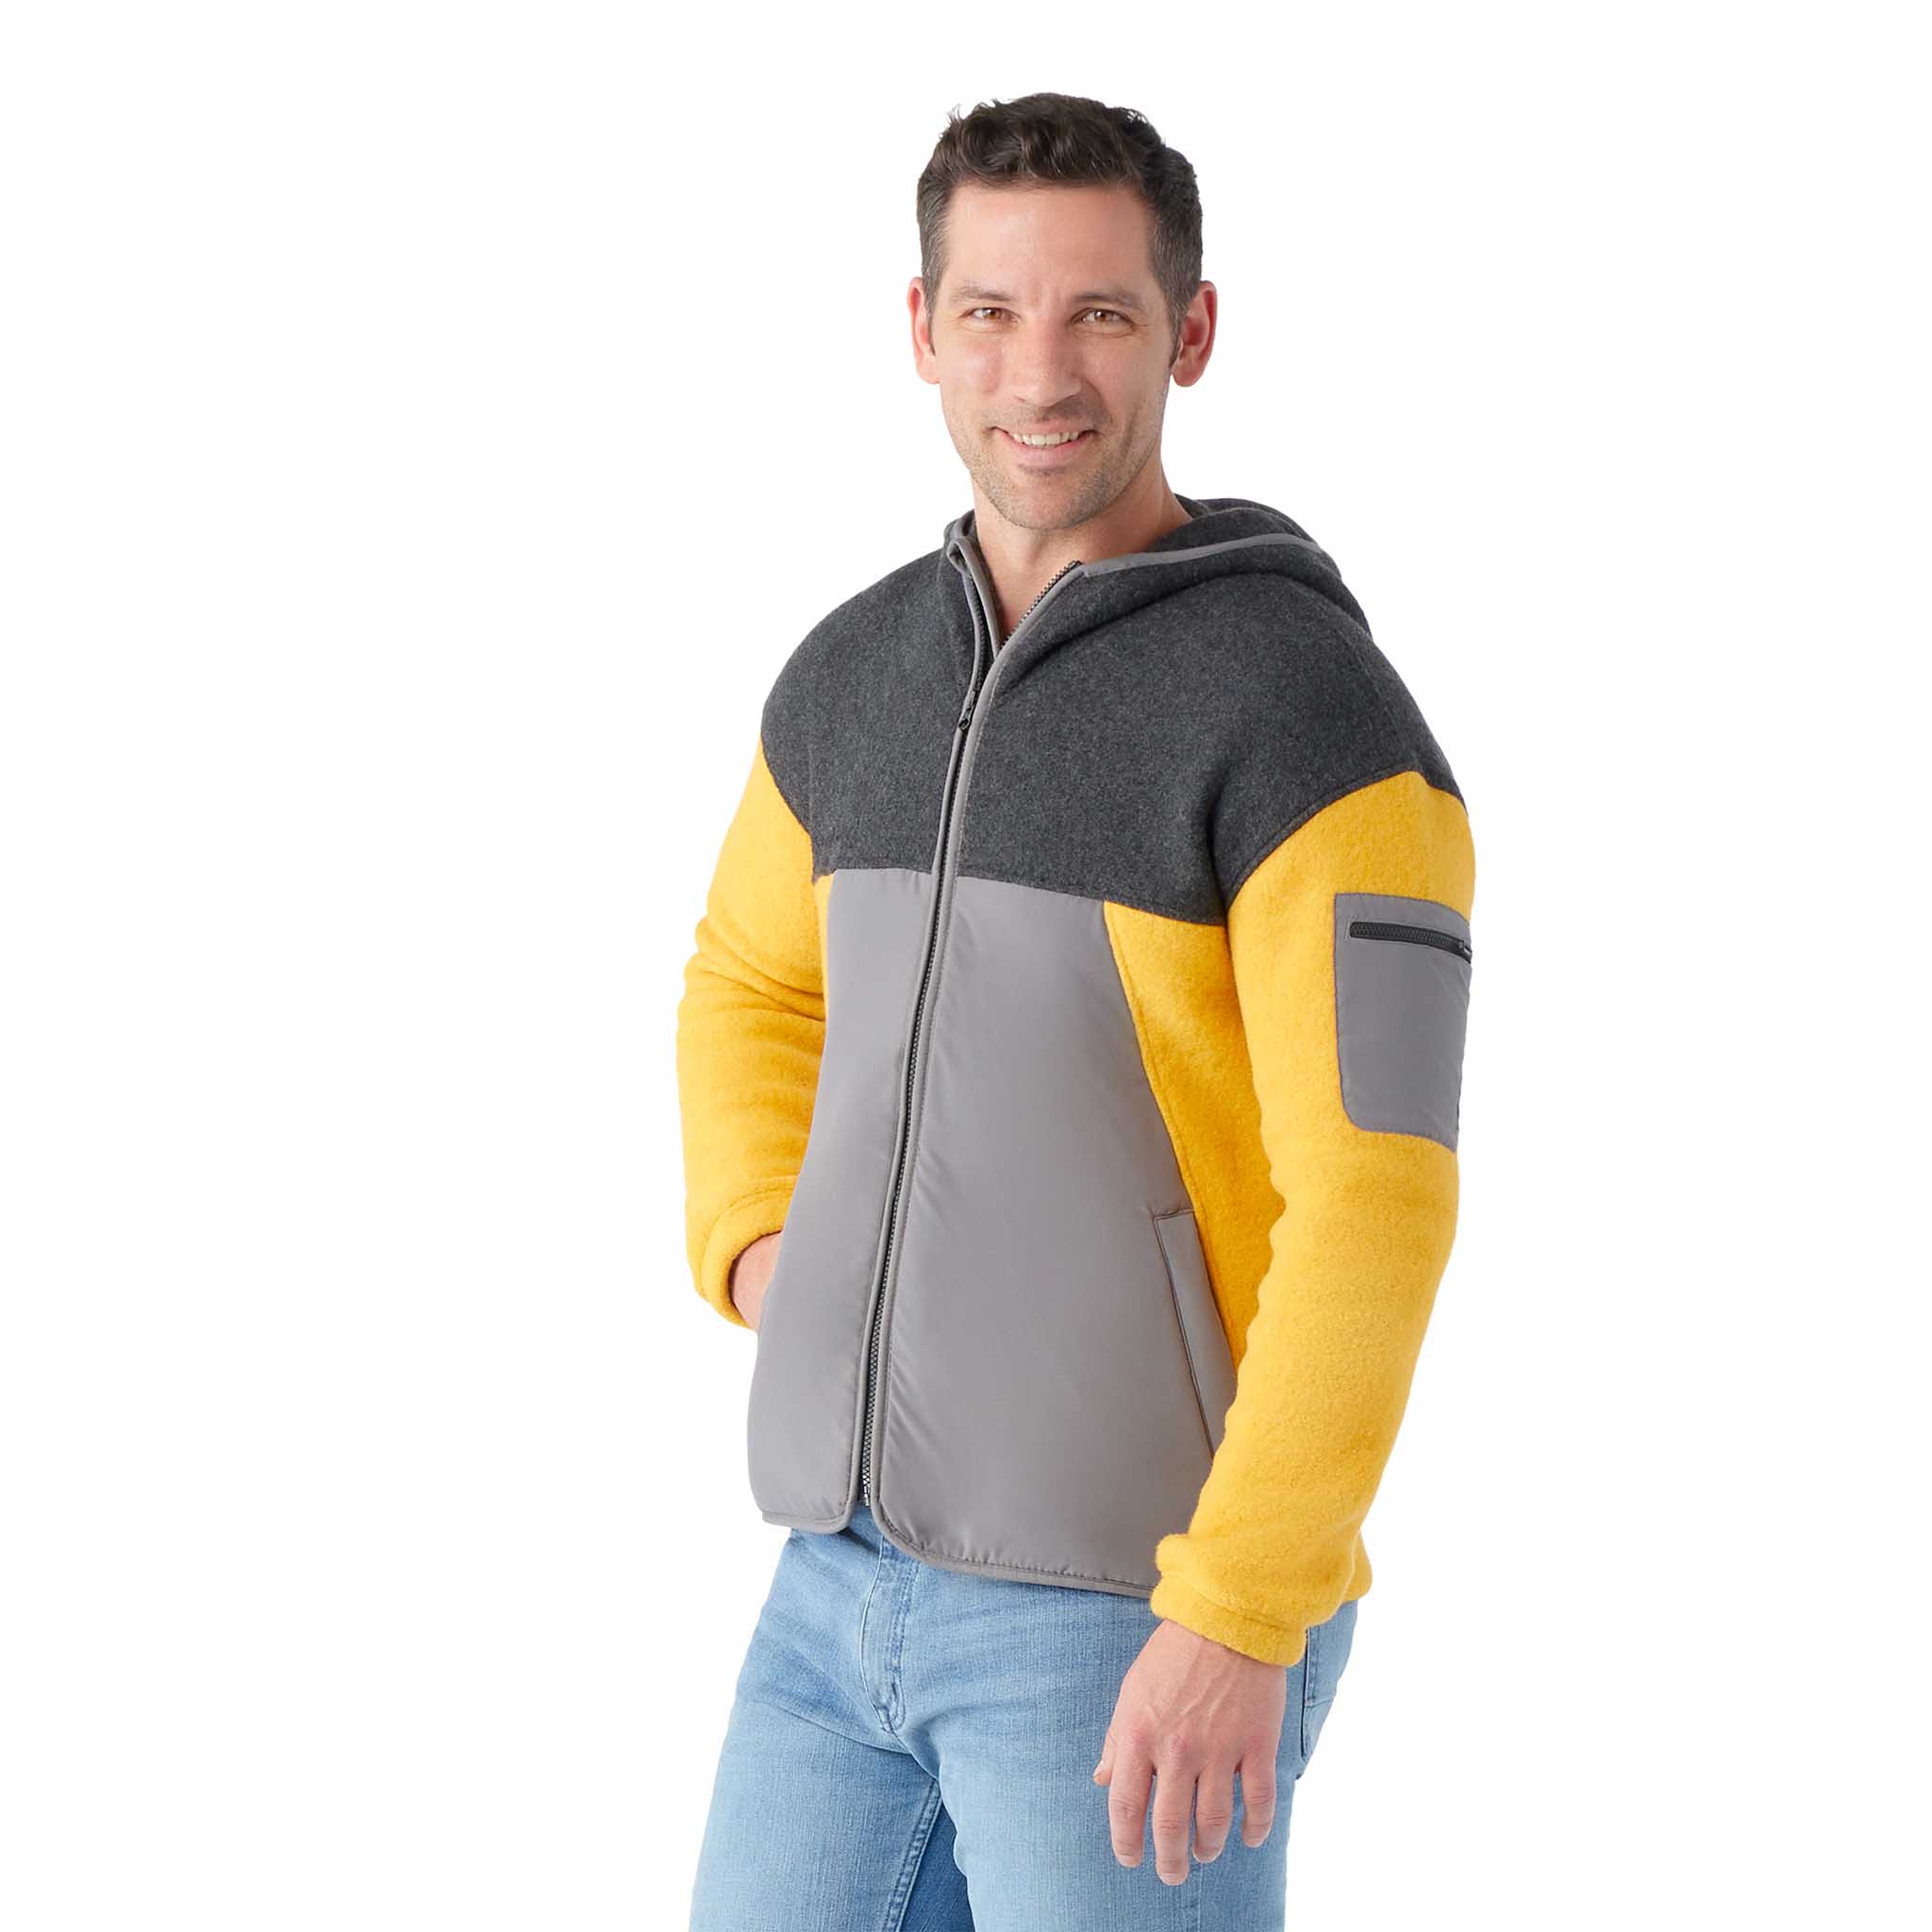 Smartwool Hudson Trail fleece jacket for men – Soccer Sport Fitness